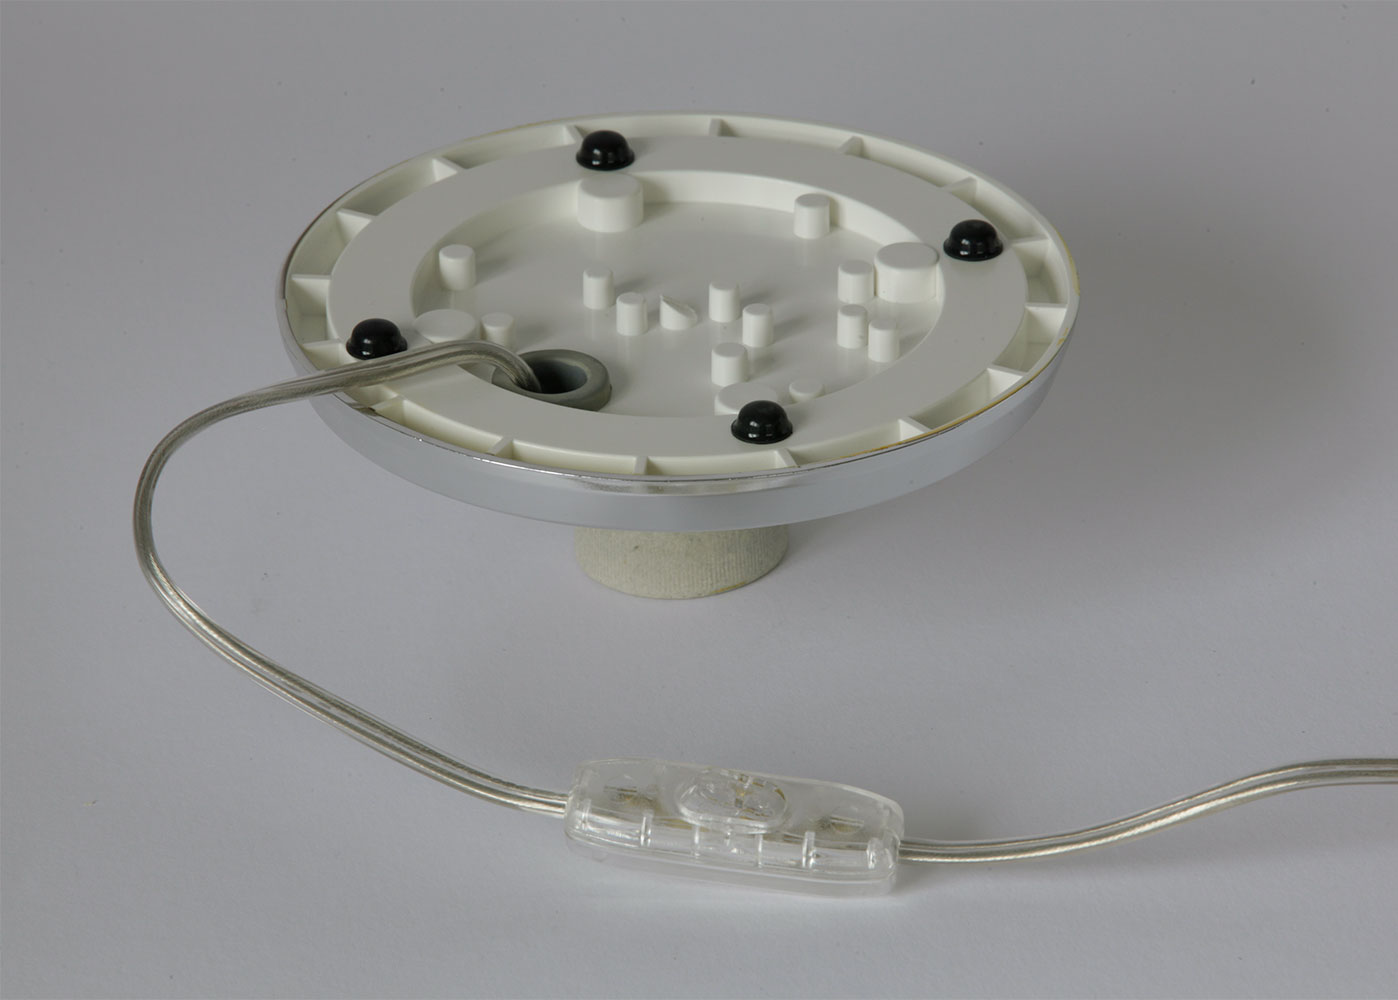 Kugel-Tischleuchte BINA aus Opalglas, Ø 20–30 cm: Mit PVC-Kabelzuleitung ca. 130 cm und Schalter